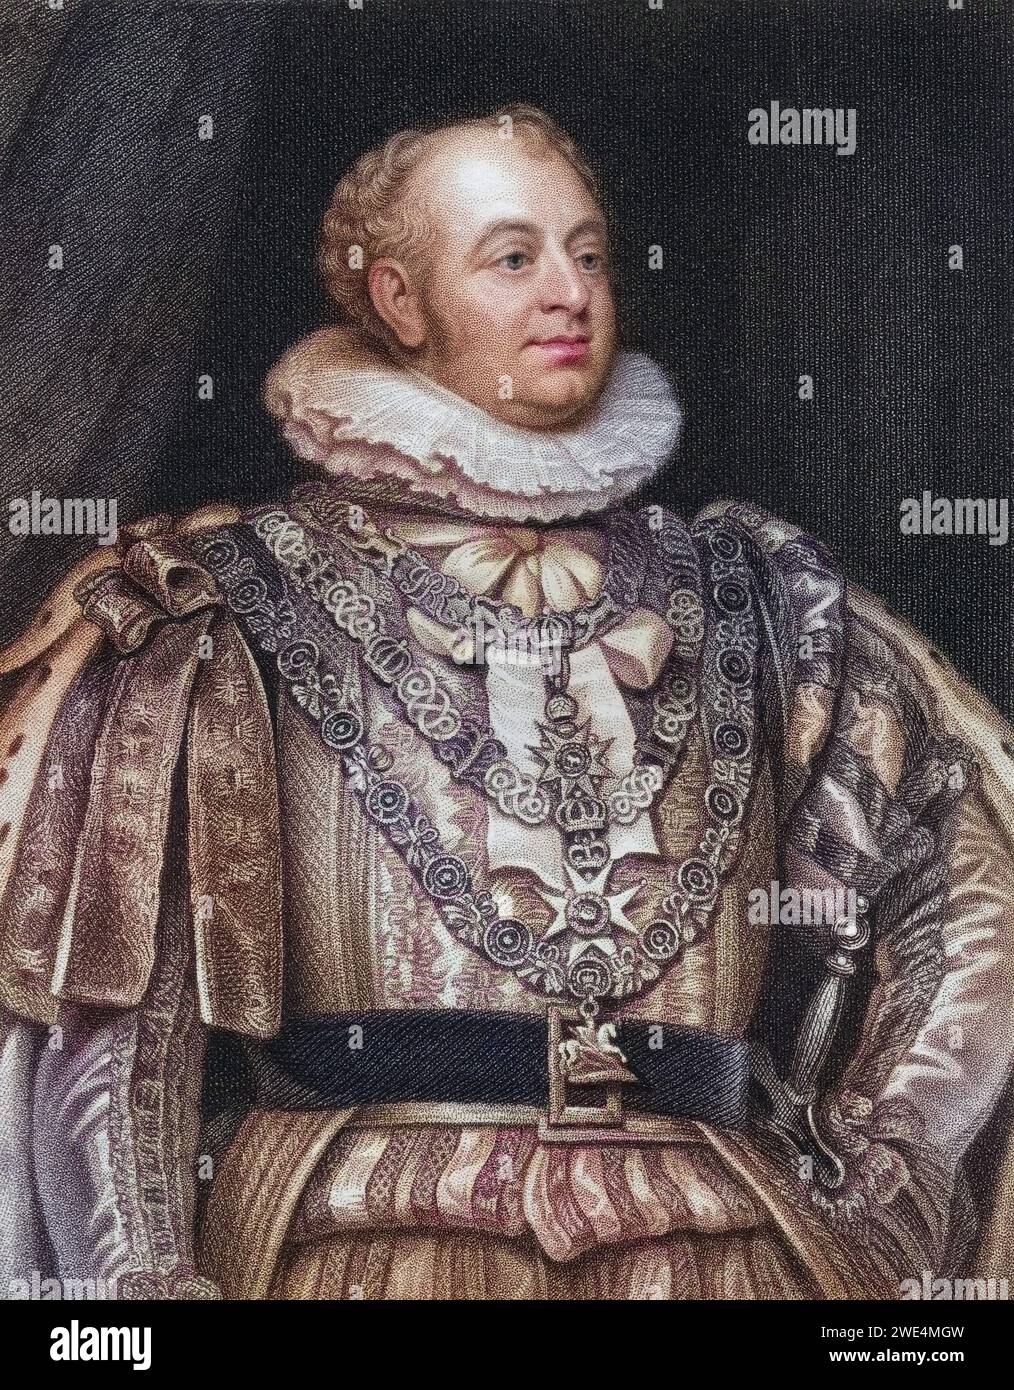 Prinz Augustus Friedrich Herzog von York und Albany 1763 bis 1827 zweiter Sohn von König Georg III., Historisch, digital restaurierte Reproduktion von einer Vorlage aus dem 19. Jahrhundert, Datum nicht angegeben Stockfoto